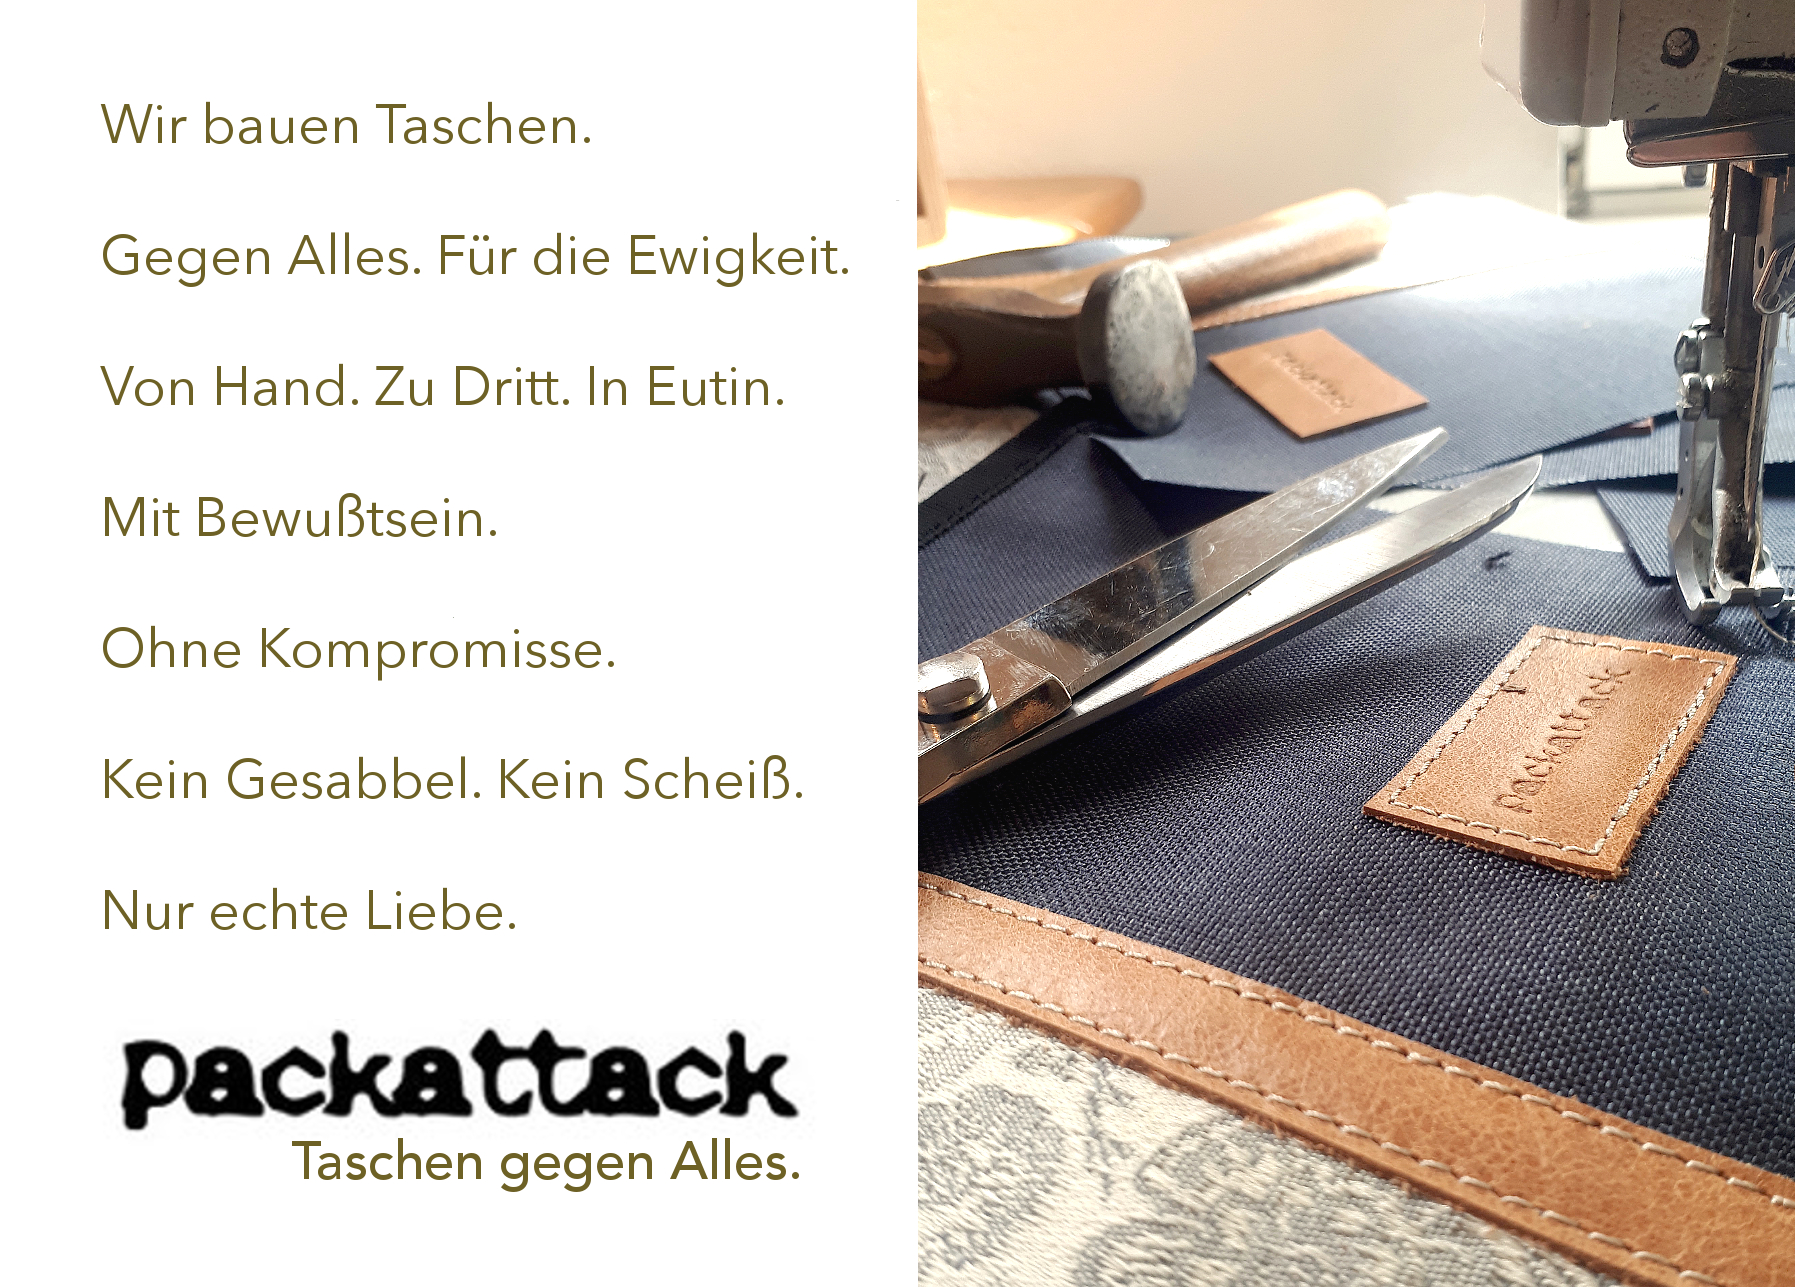 (c) Packattack.de